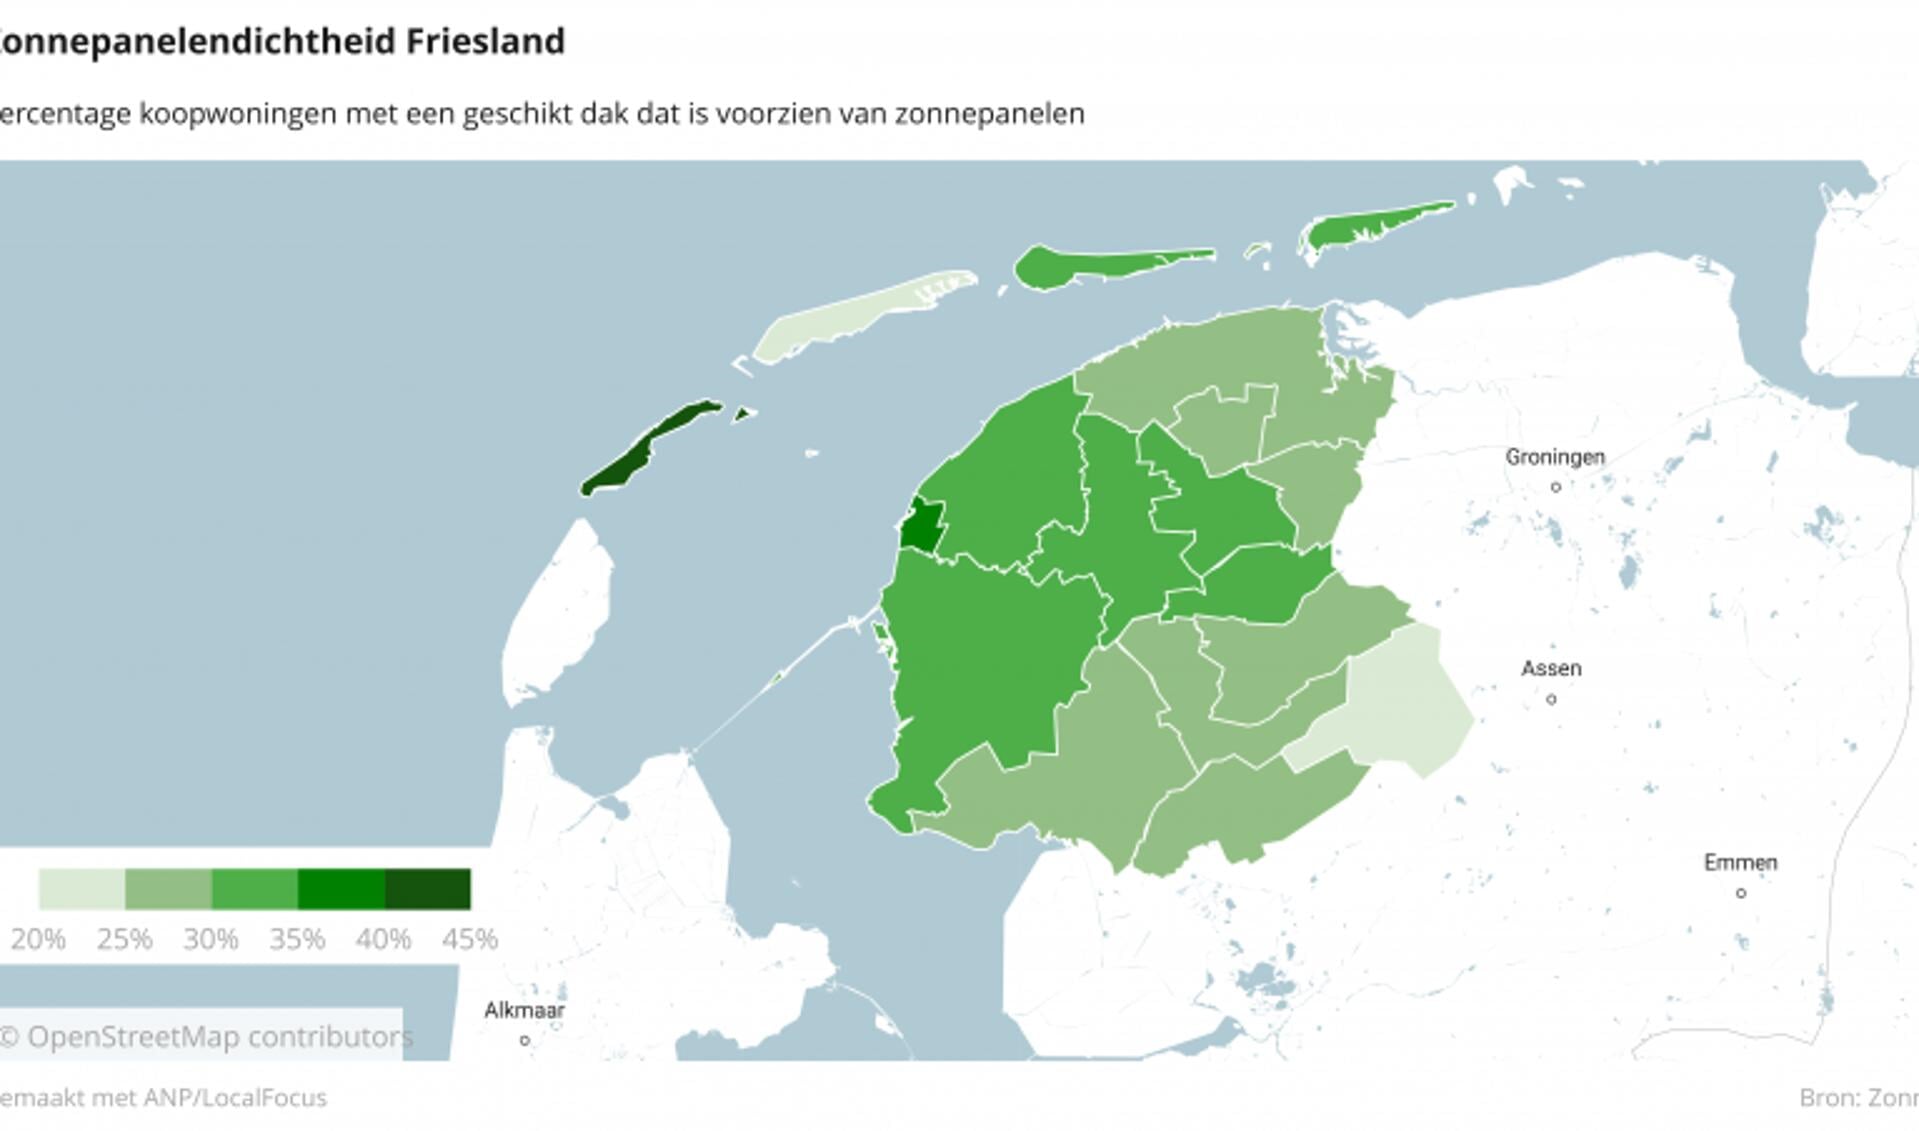 Vlieland en Harlingen zijn de gemeenten met de hoogste percentages zonnepanelen op koopwoningen in Fryslân.